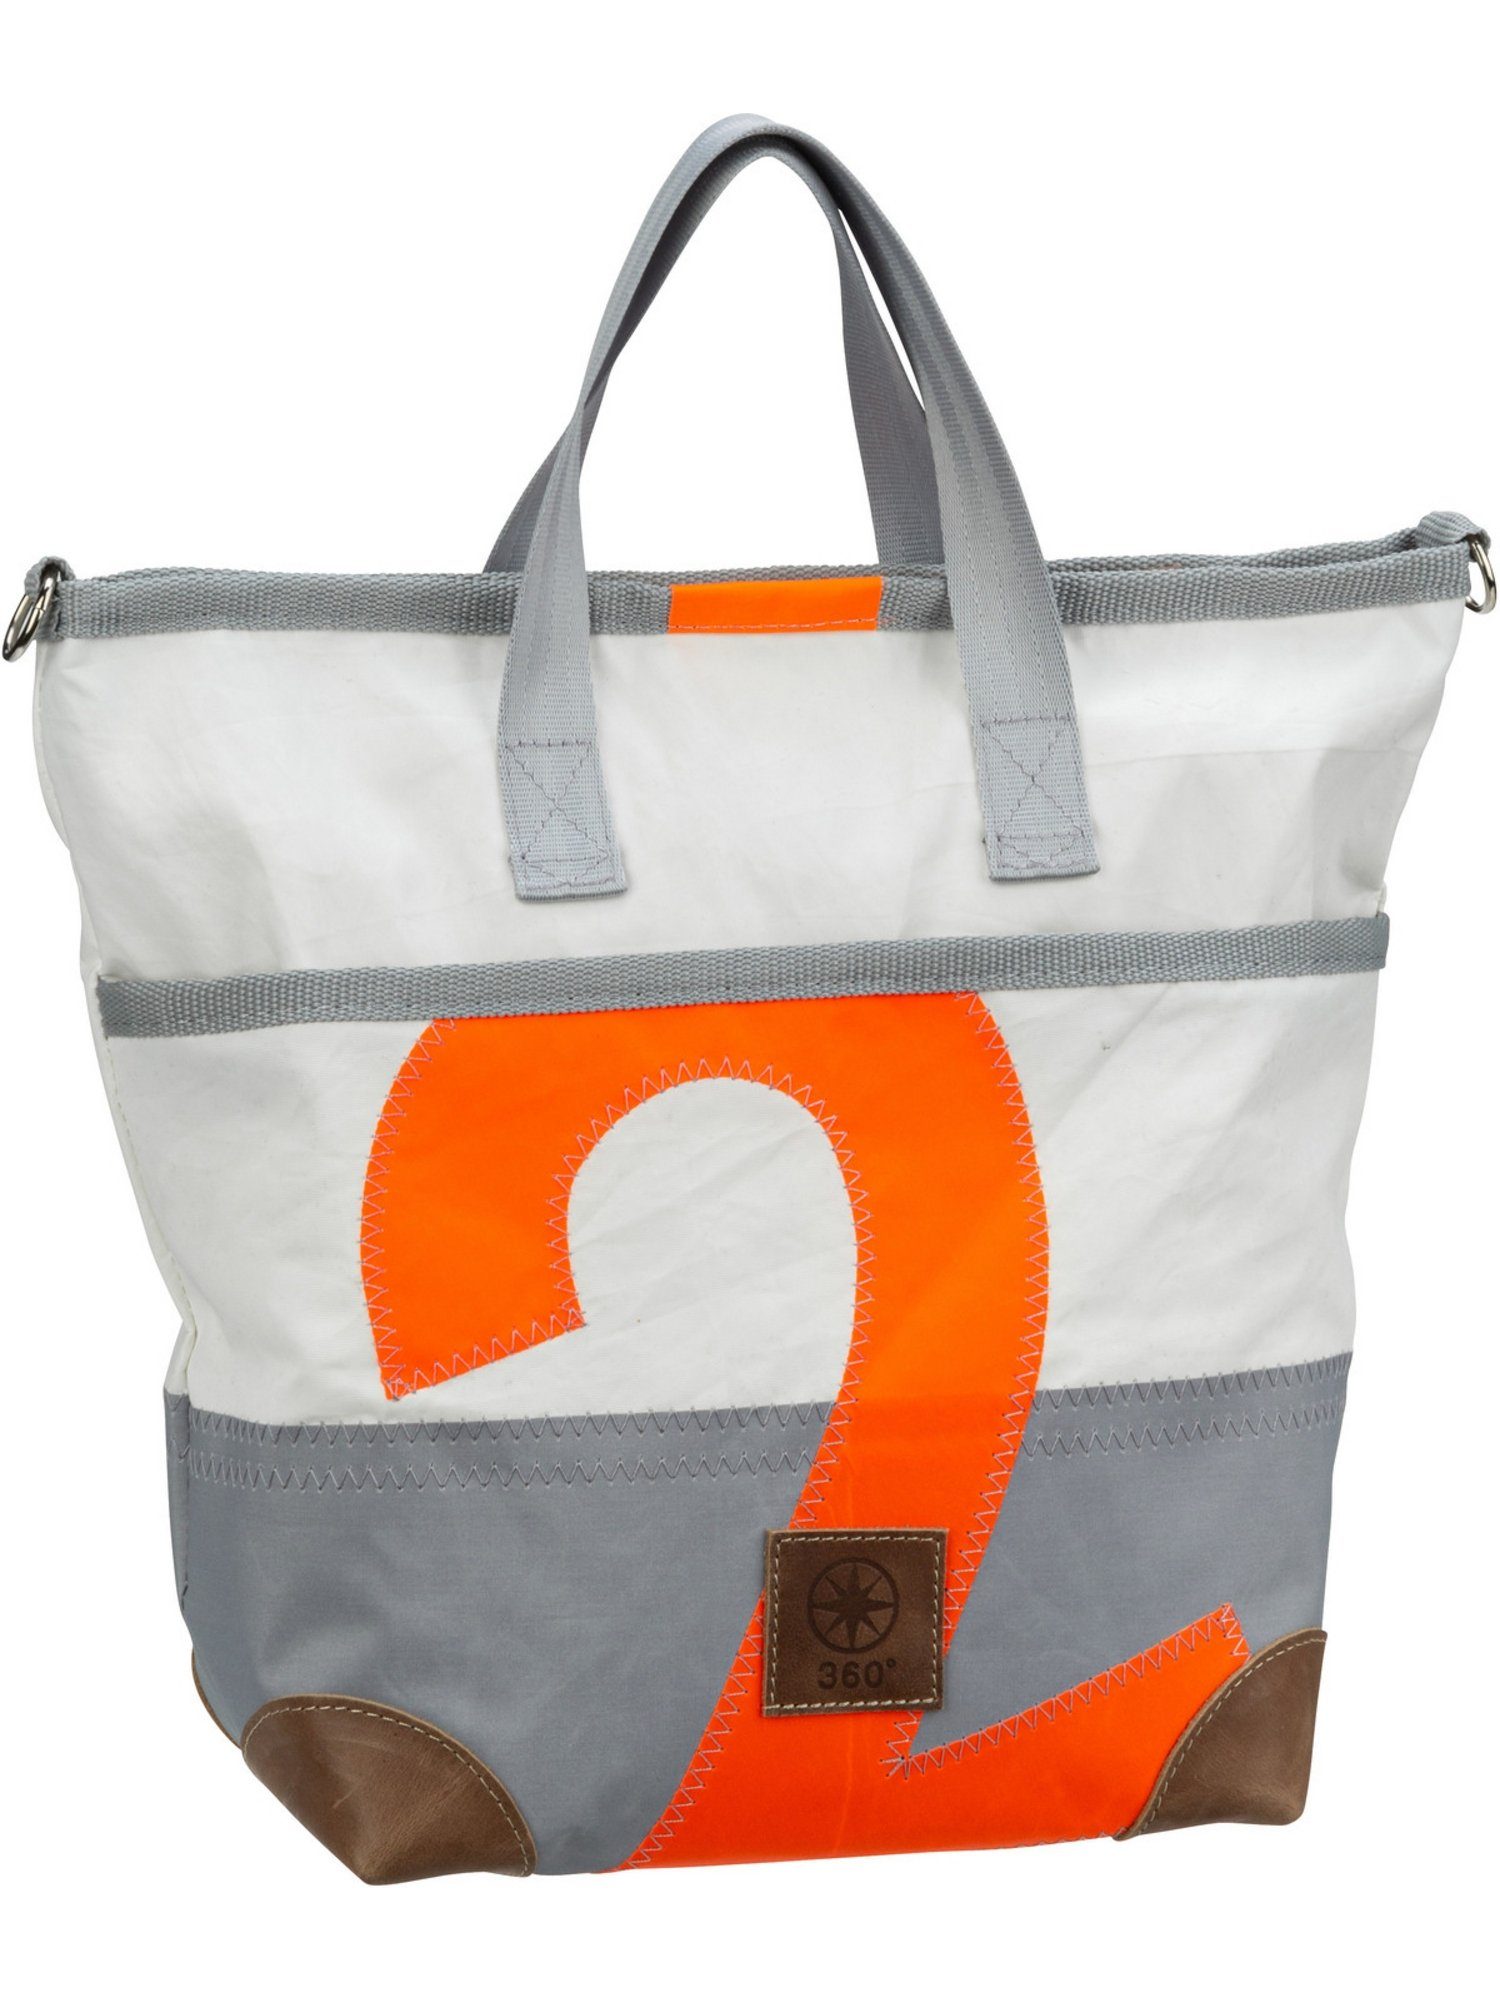 360Grad Handtasche Deern Mini, Shopper Weiß/Grau mit oranger Zahl